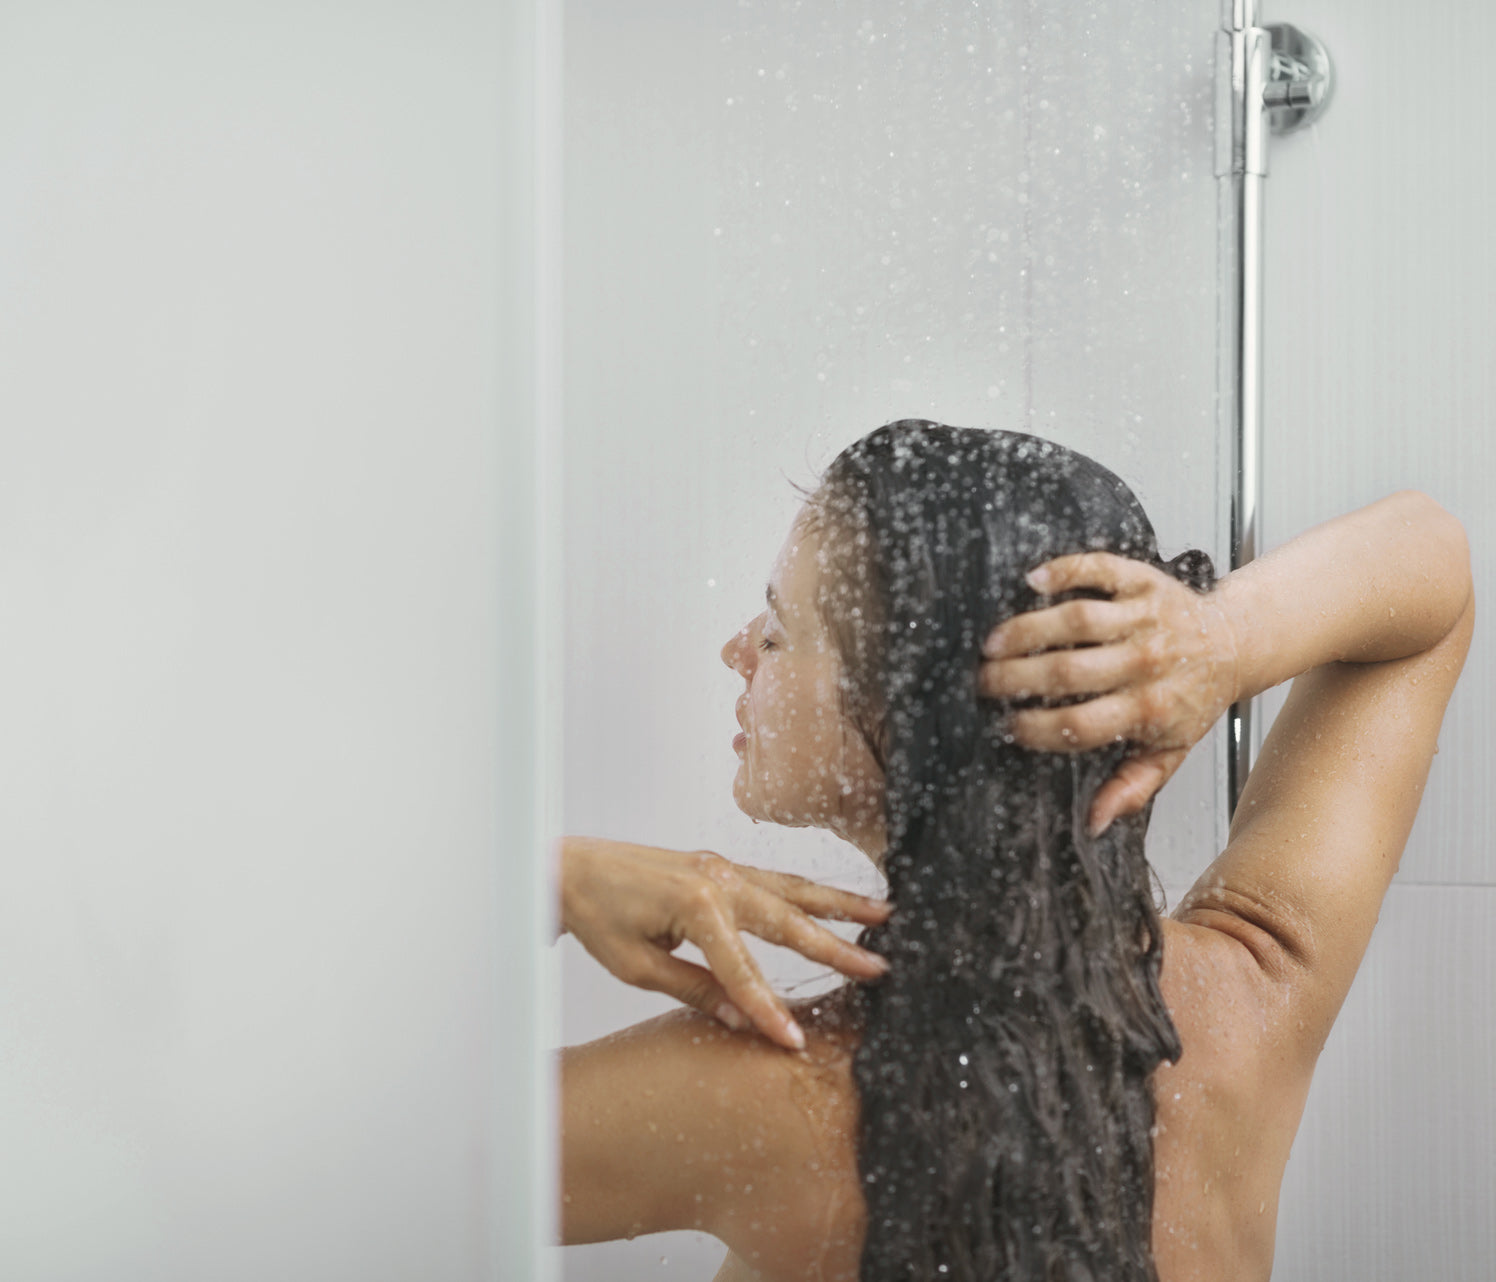 Avoid mega-hot showers